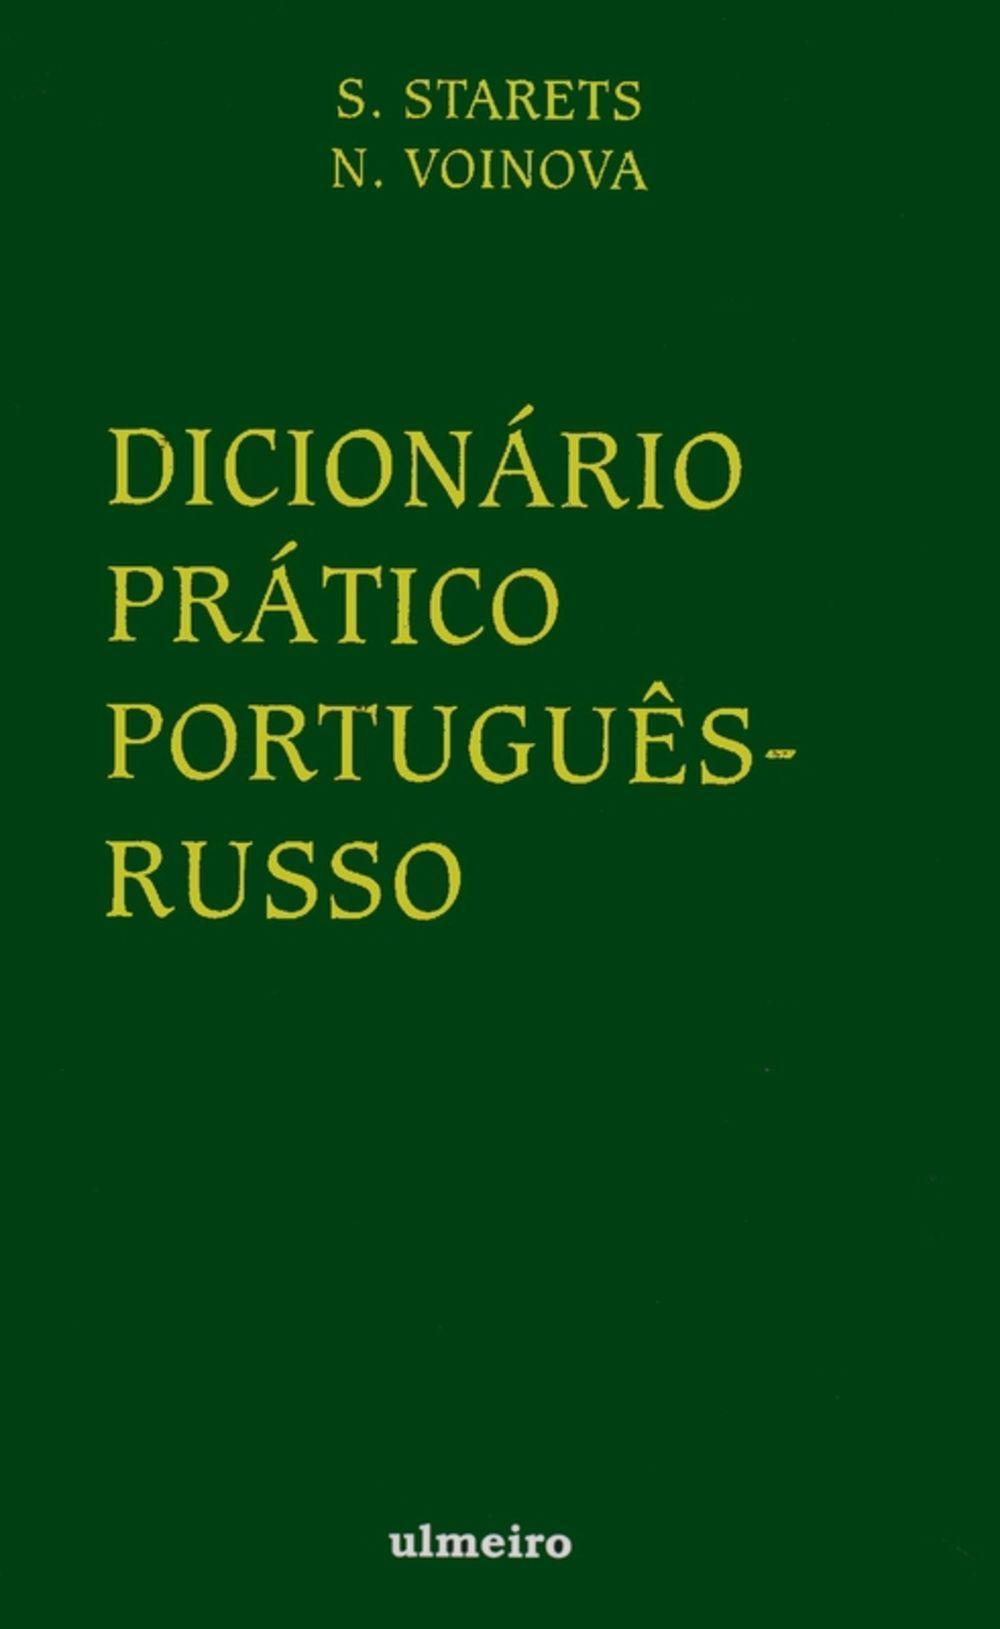 Dicionário Prático Português-Russo é bom? Vale a pena?